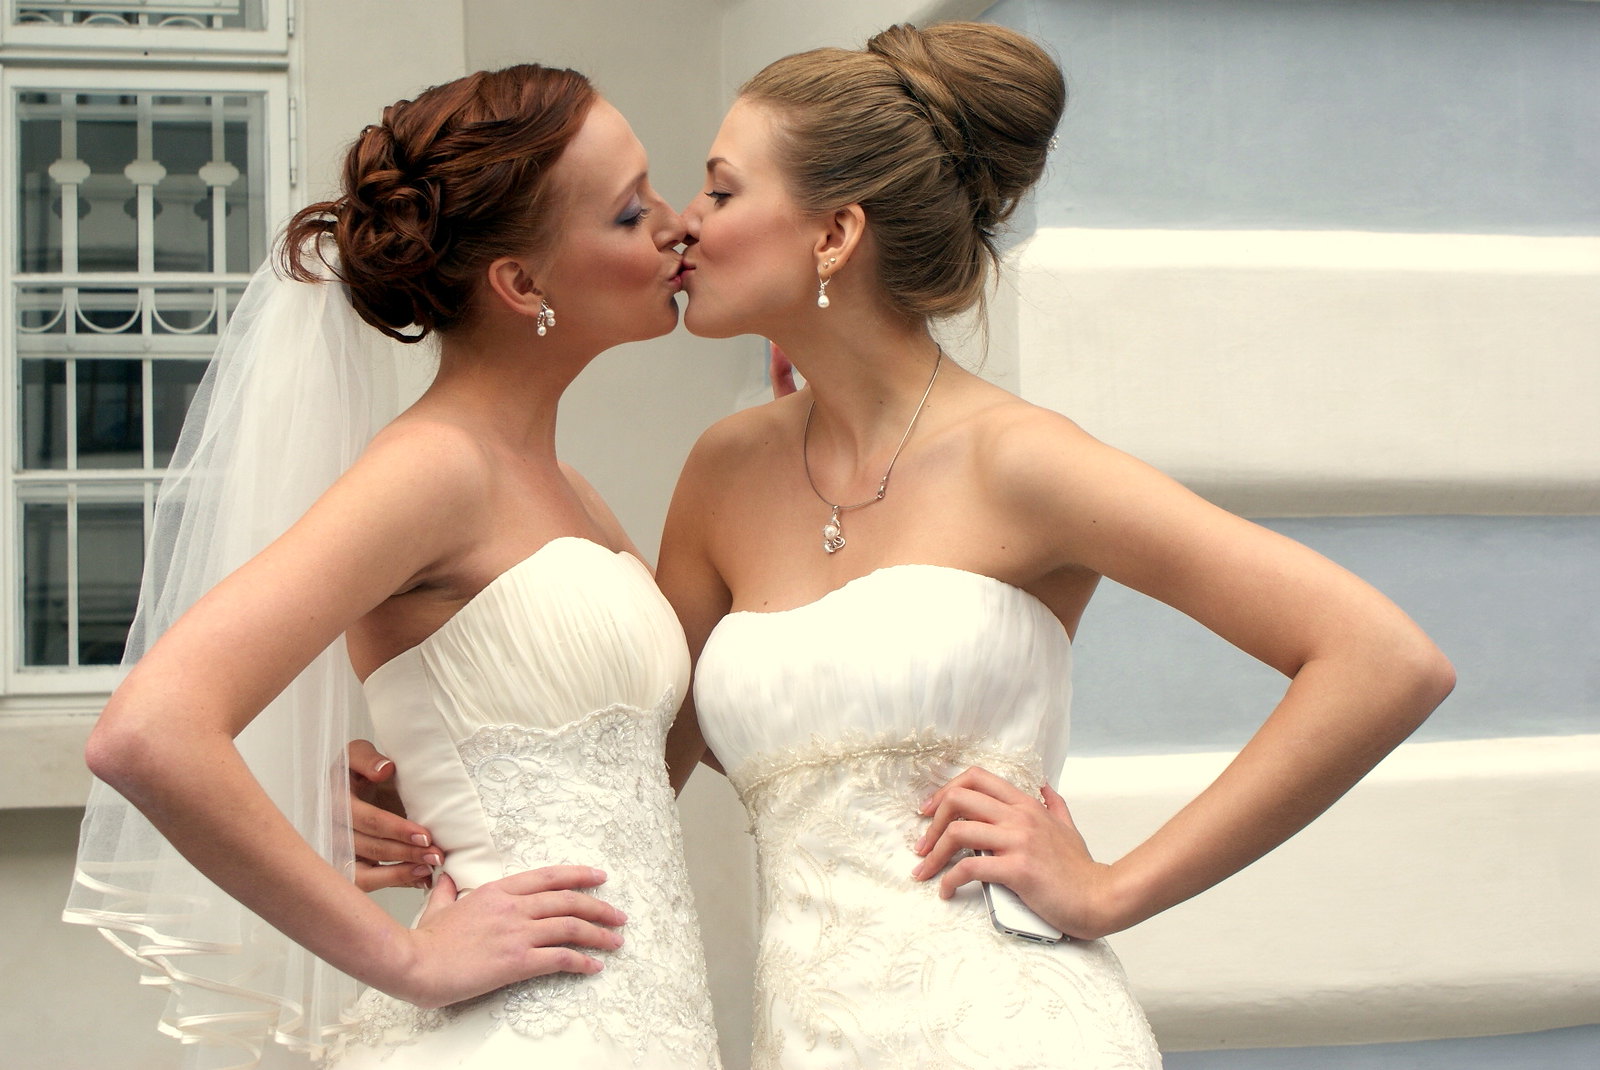 Glamour lesbians. Две девушки в свадебных платьях. Две невесты красивые. Свадебные платья для двух невест. Свадебное платье свадьба двух девушек.